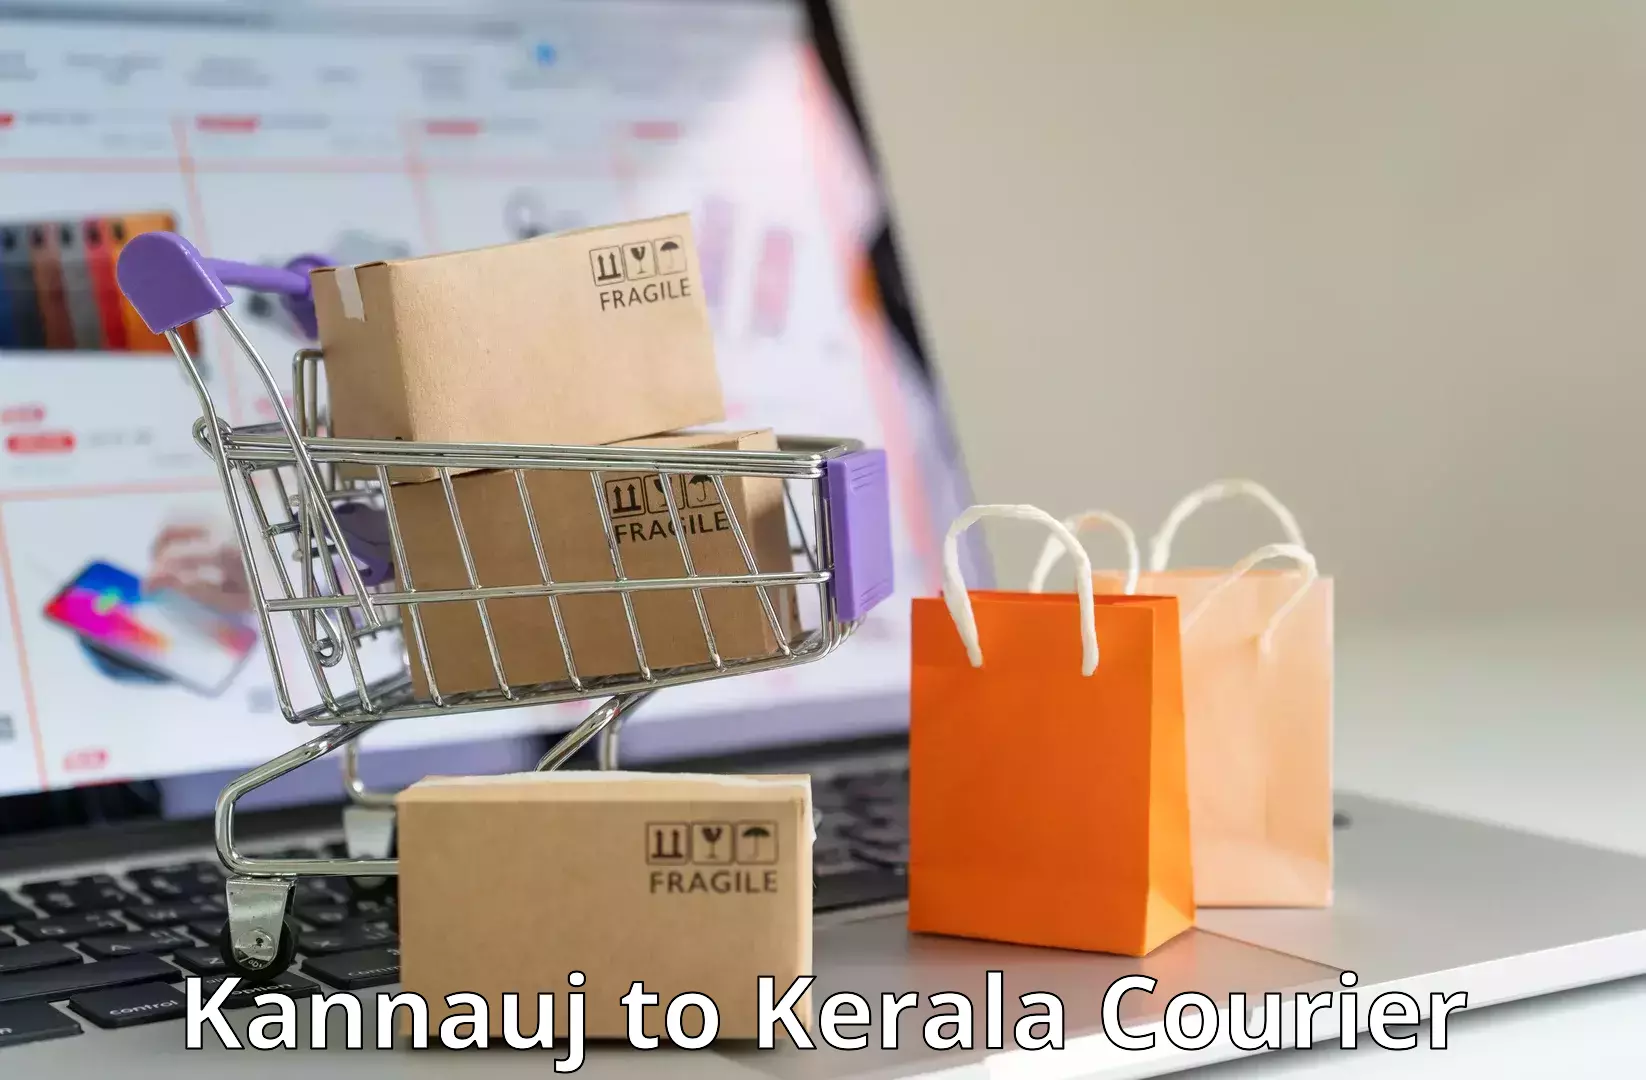 High-capacity parcel service Kannauj to Kanhangad